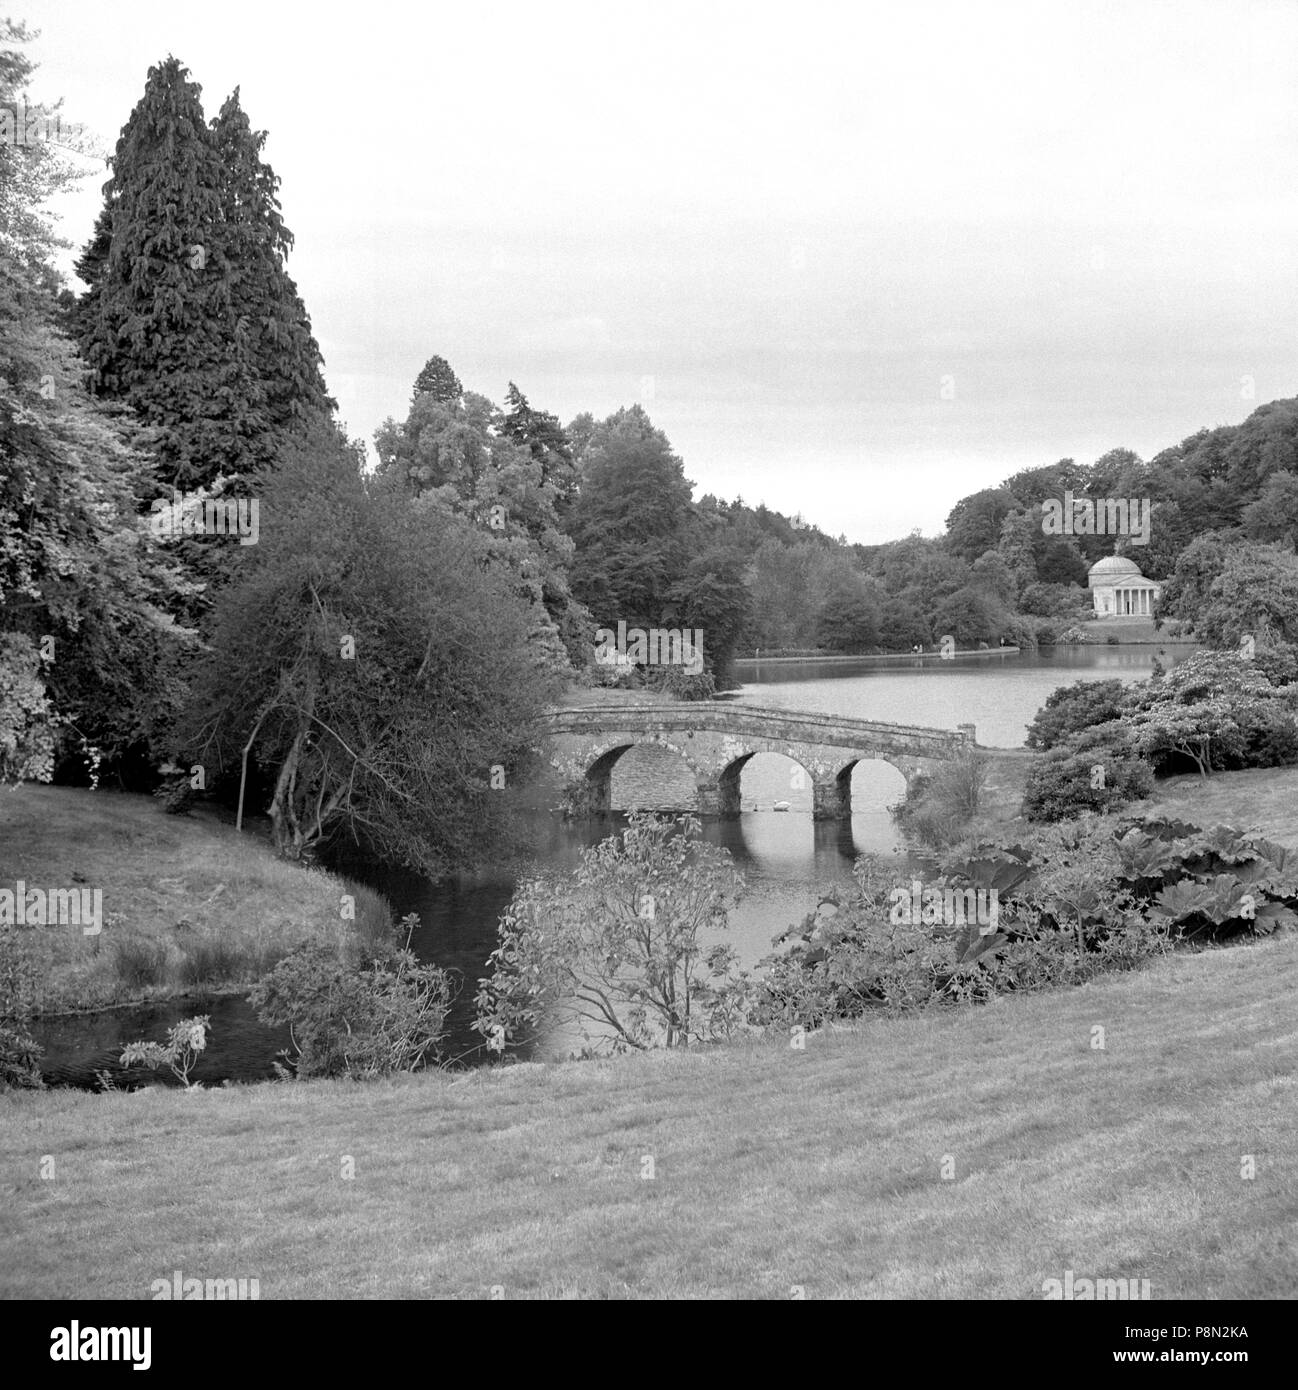 Gardens of Stourhead, Stourton, Wiltshire, c1945-c1980. Artist: Eric de Maré. Stock Photo